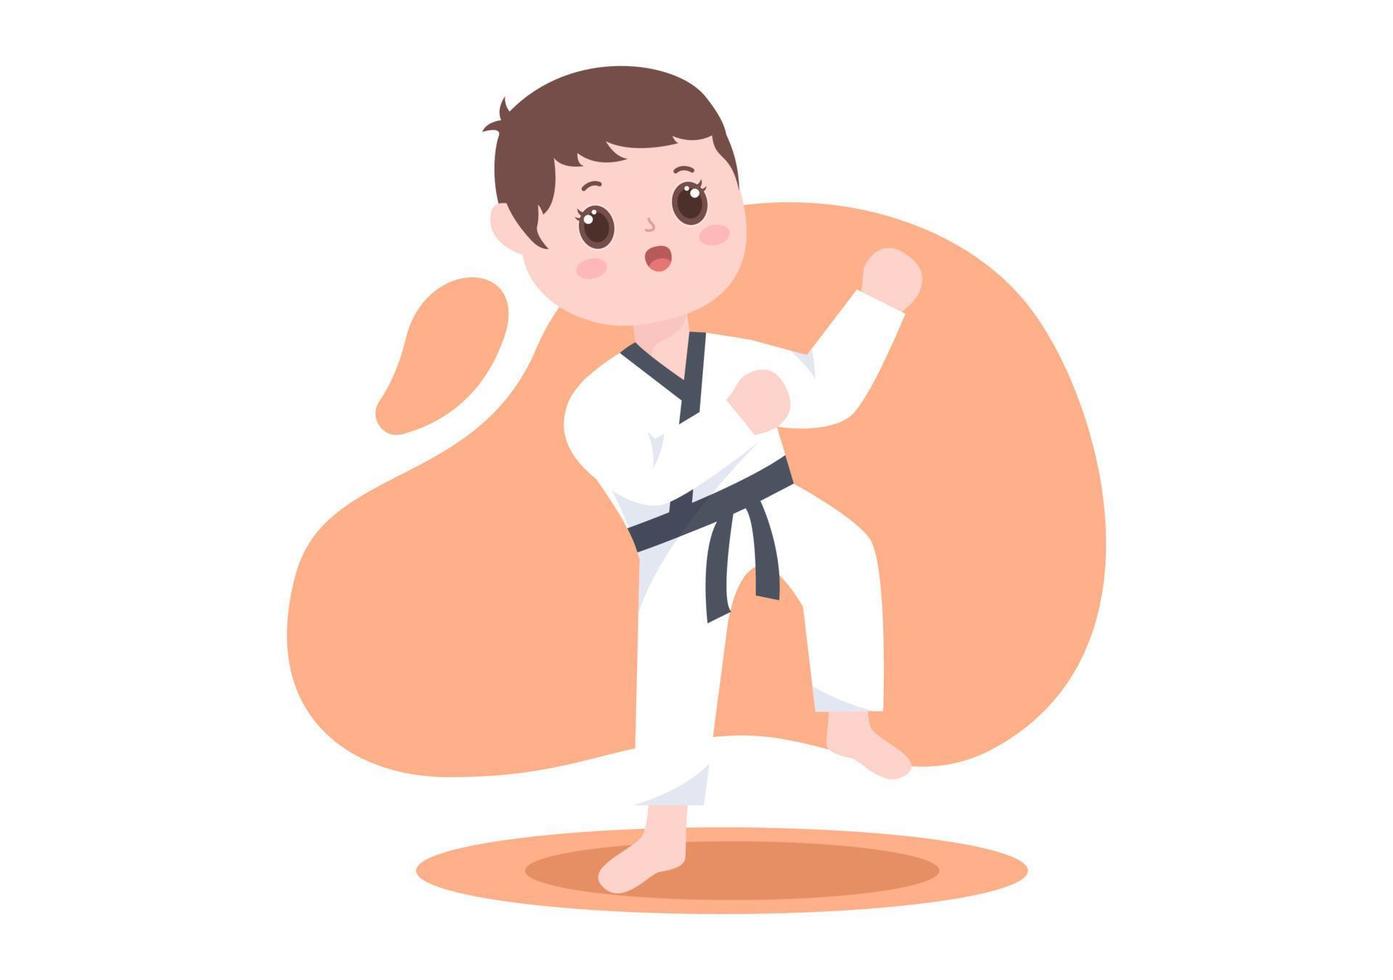 söta tecknade barn som gör några grundläggande karatekampsportrörelser, slåss och bär kimono i platt stilbakgrundsvektorillustration vektor